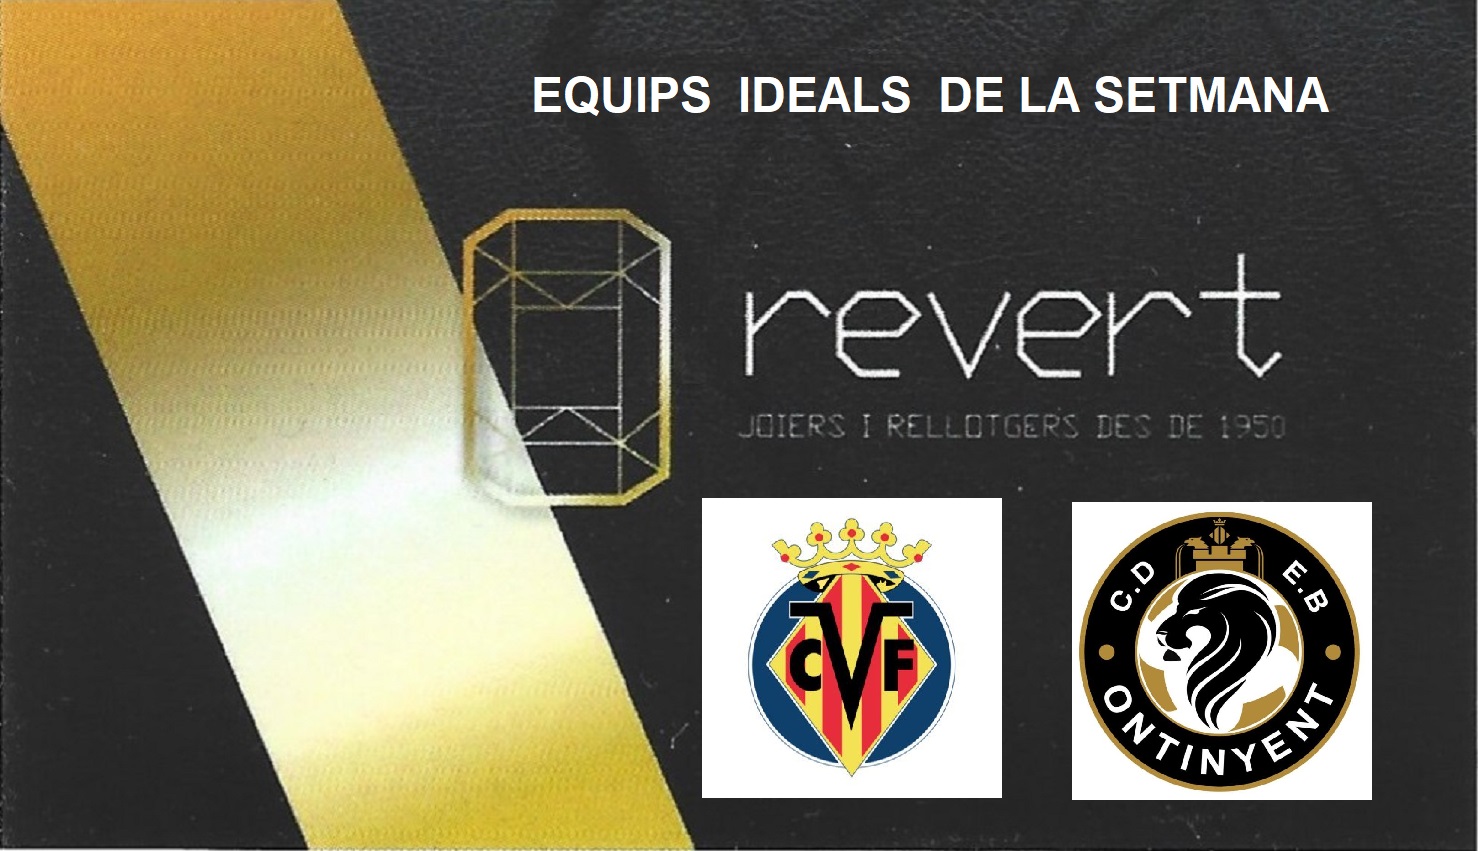 Amb la Joieria Revert, oferim els equips ideals de la jornada